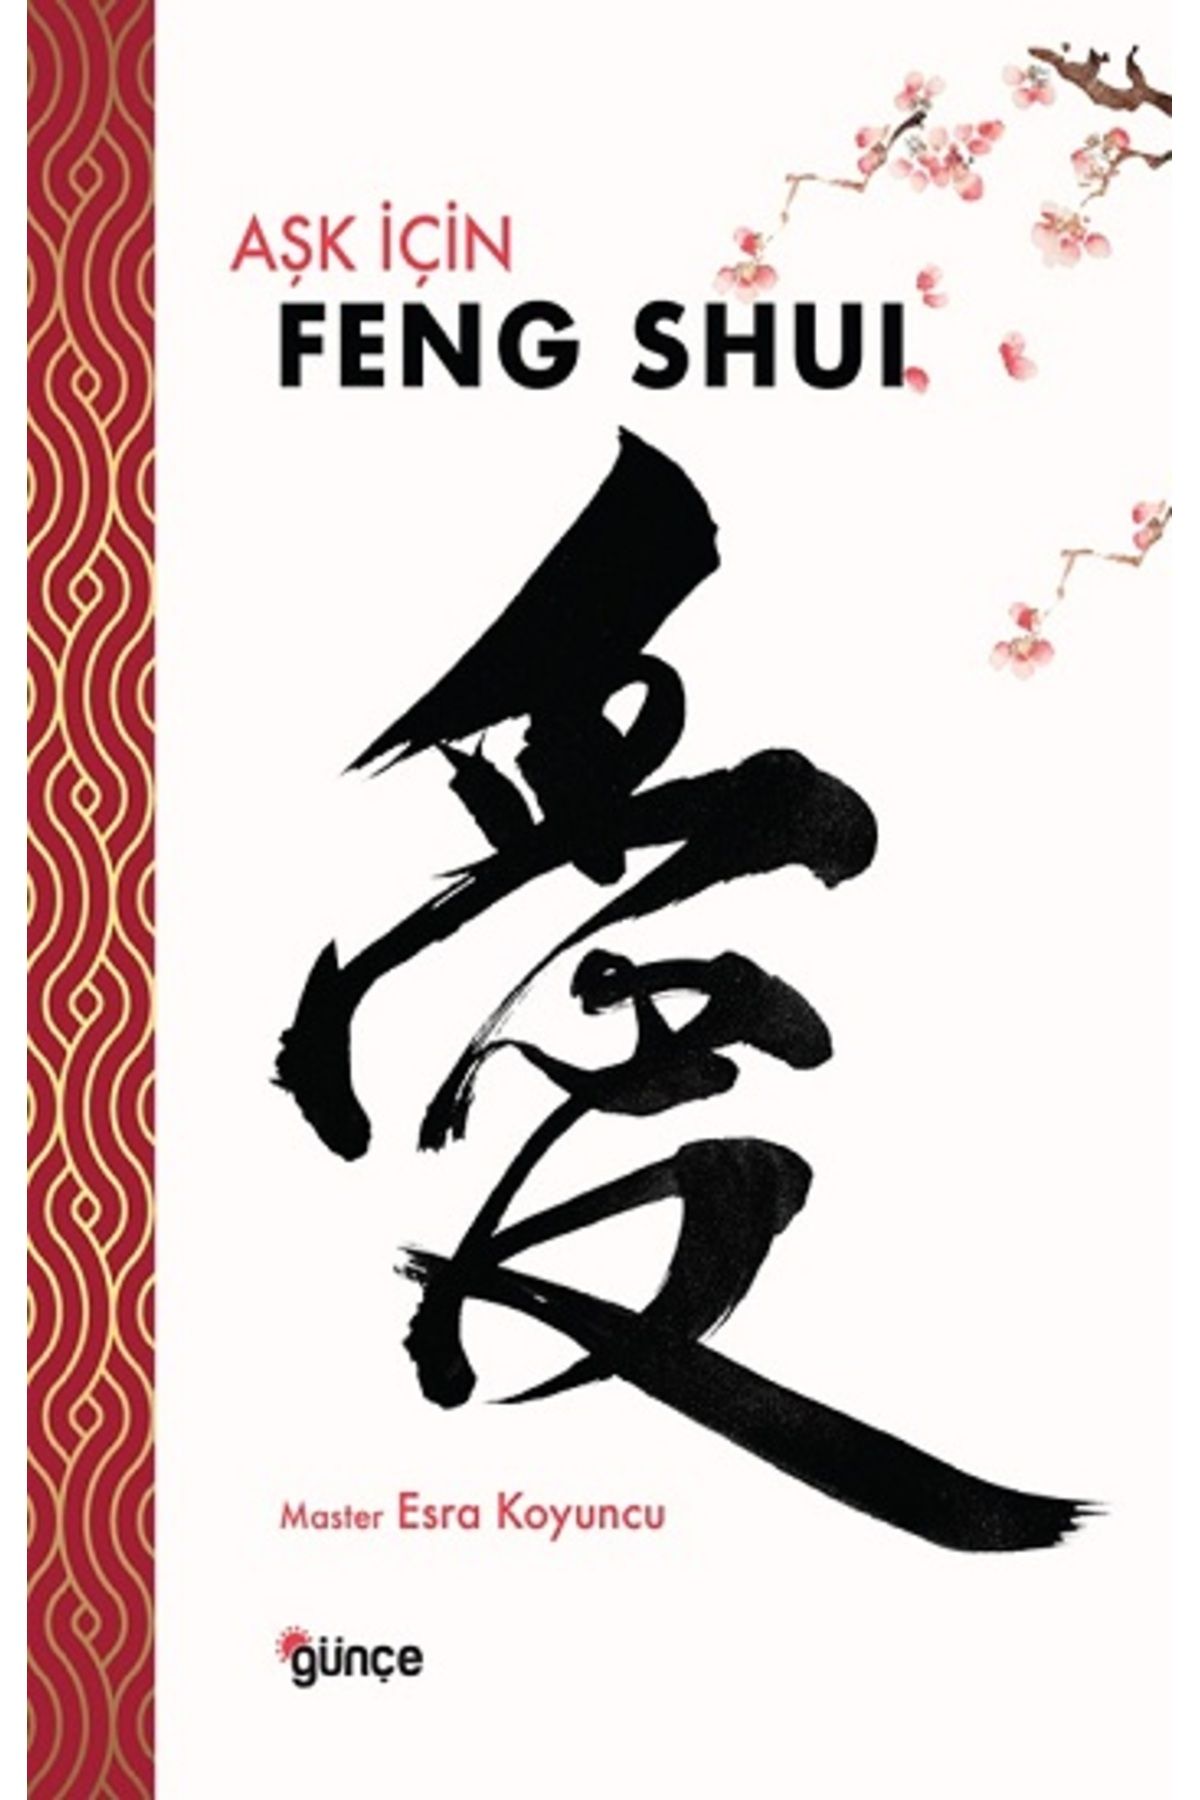 Günçe Yayınları Aşk İçin Feng Shui kitabı - Master Esra Koyuncu - Günçe Yayınları